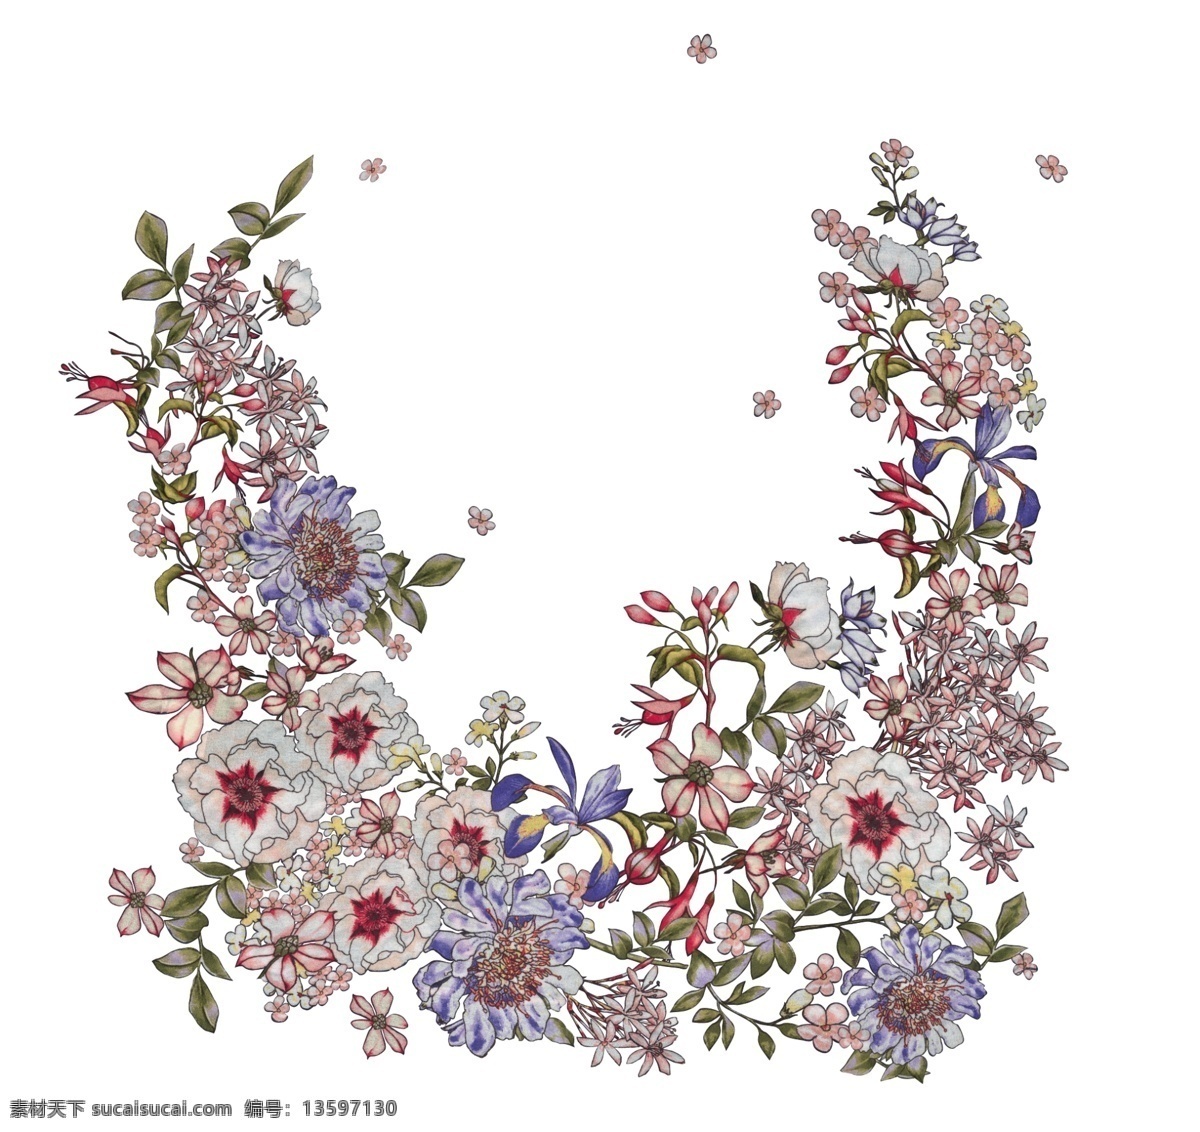 定位花型 数码印花 描稿 小碎花 免扣素材 花朵 数码印花描稿 生物世界 花草